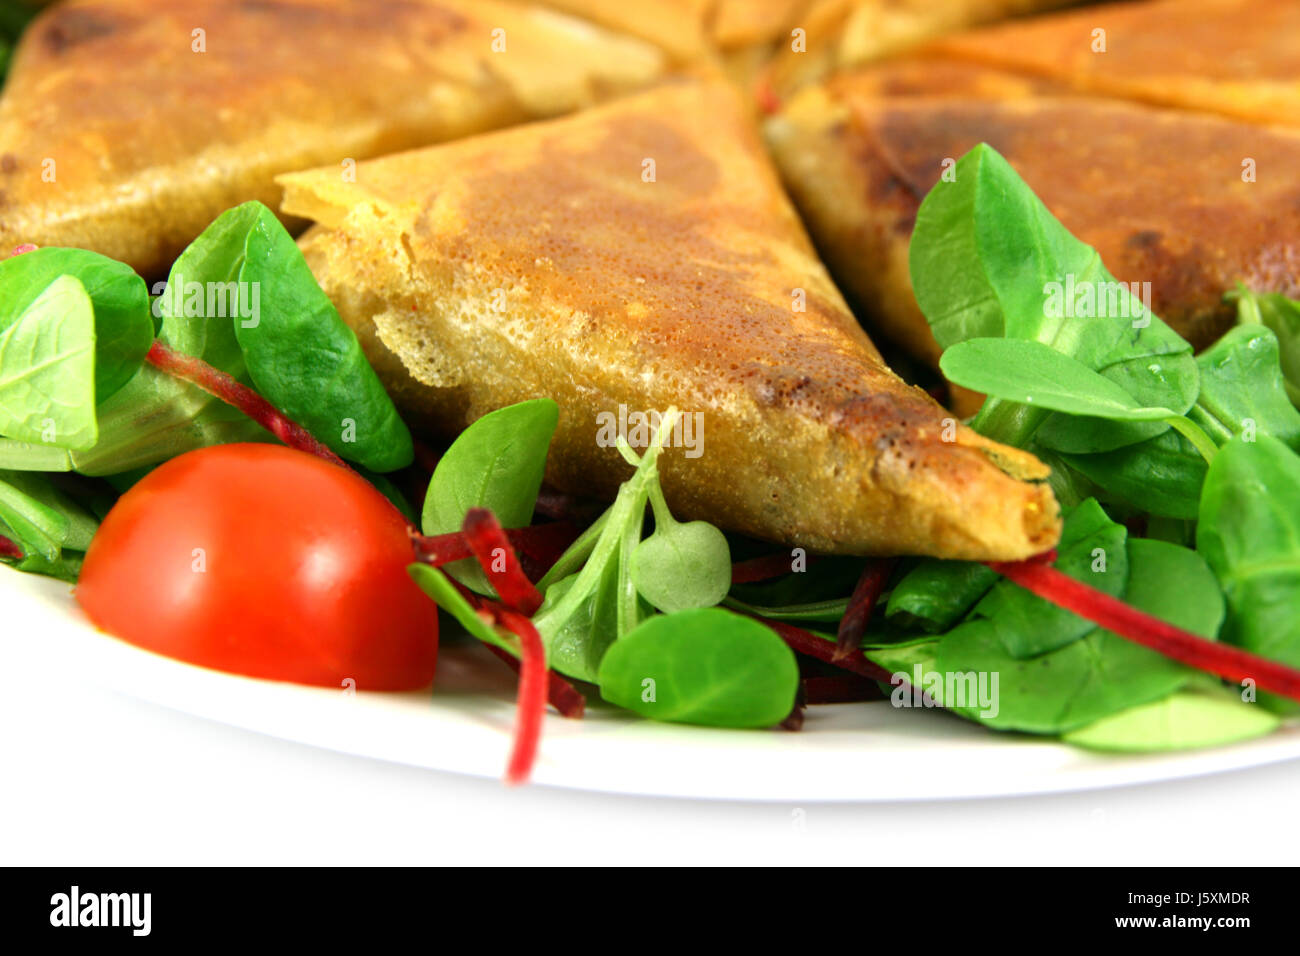 Cibo aliment cibo orientale aliment verde cucina esotica cucina araba piatto di mattoni Foto Stock